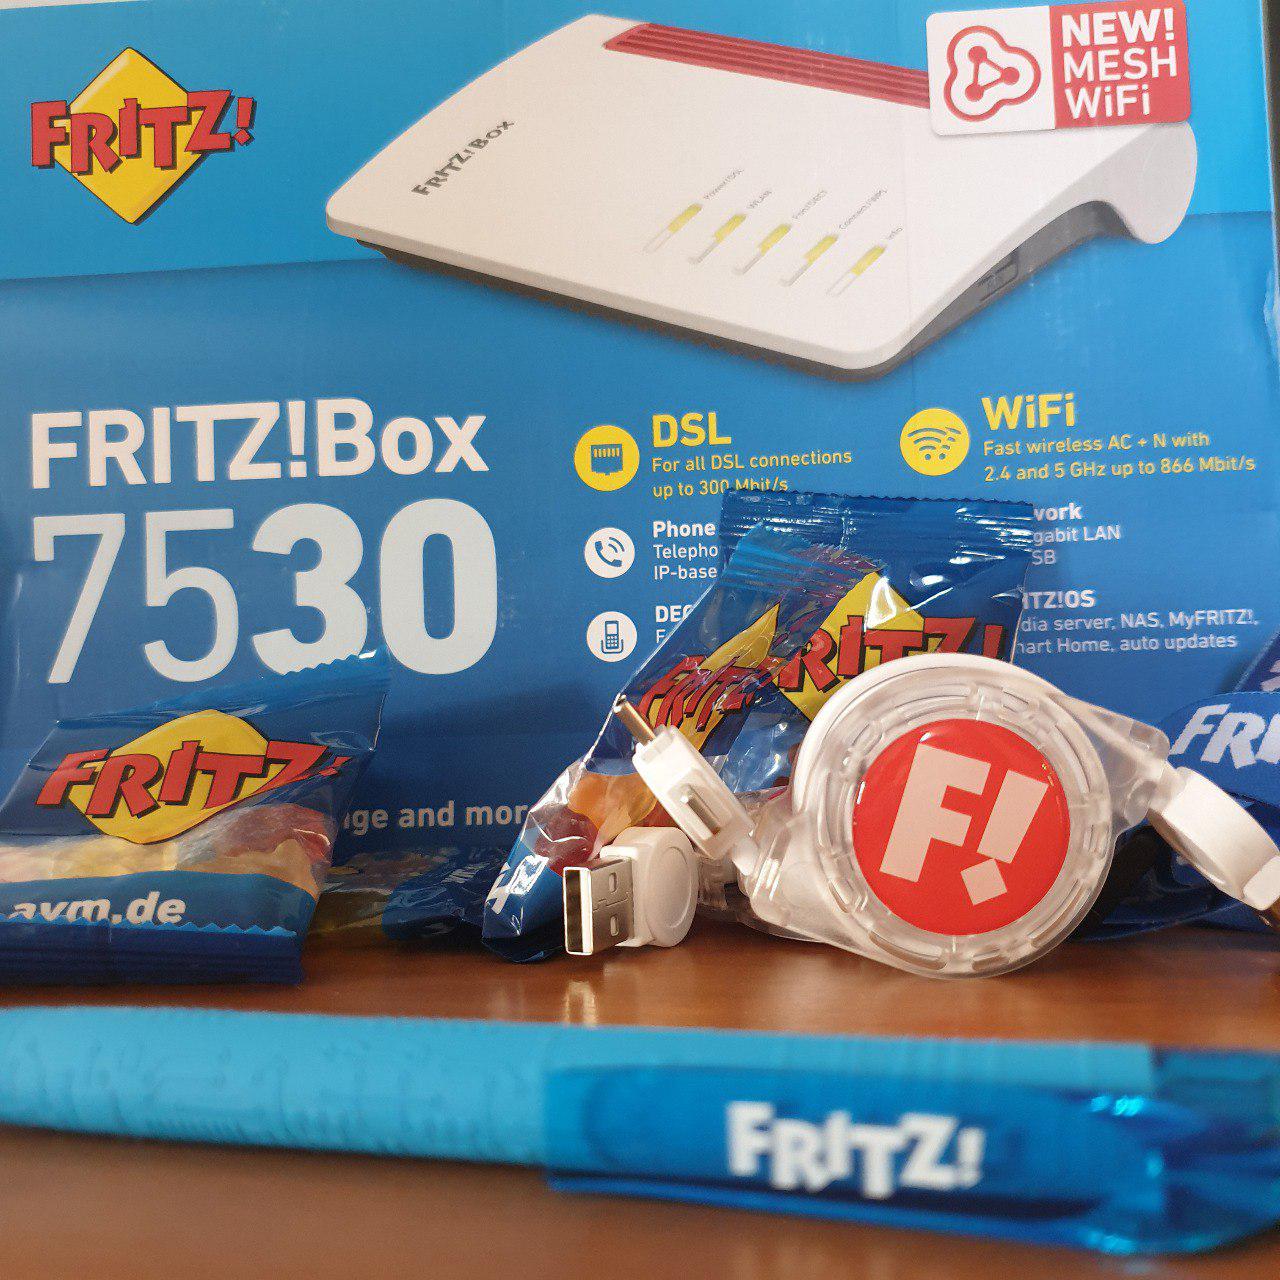 Fritz!Box 7530